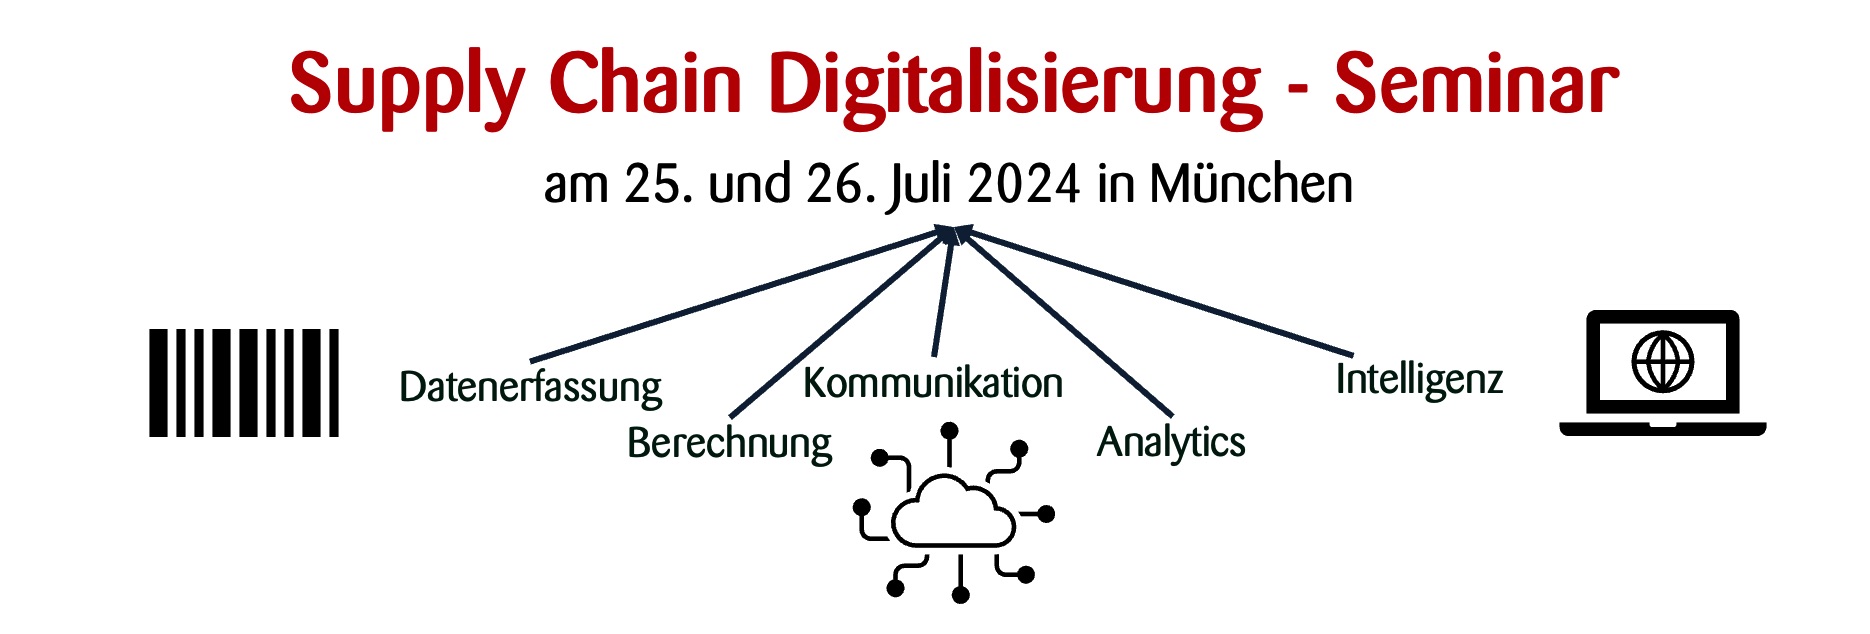 Supply Chain Digitalisierung - Seminar am 25./26. Juli 2024 in München